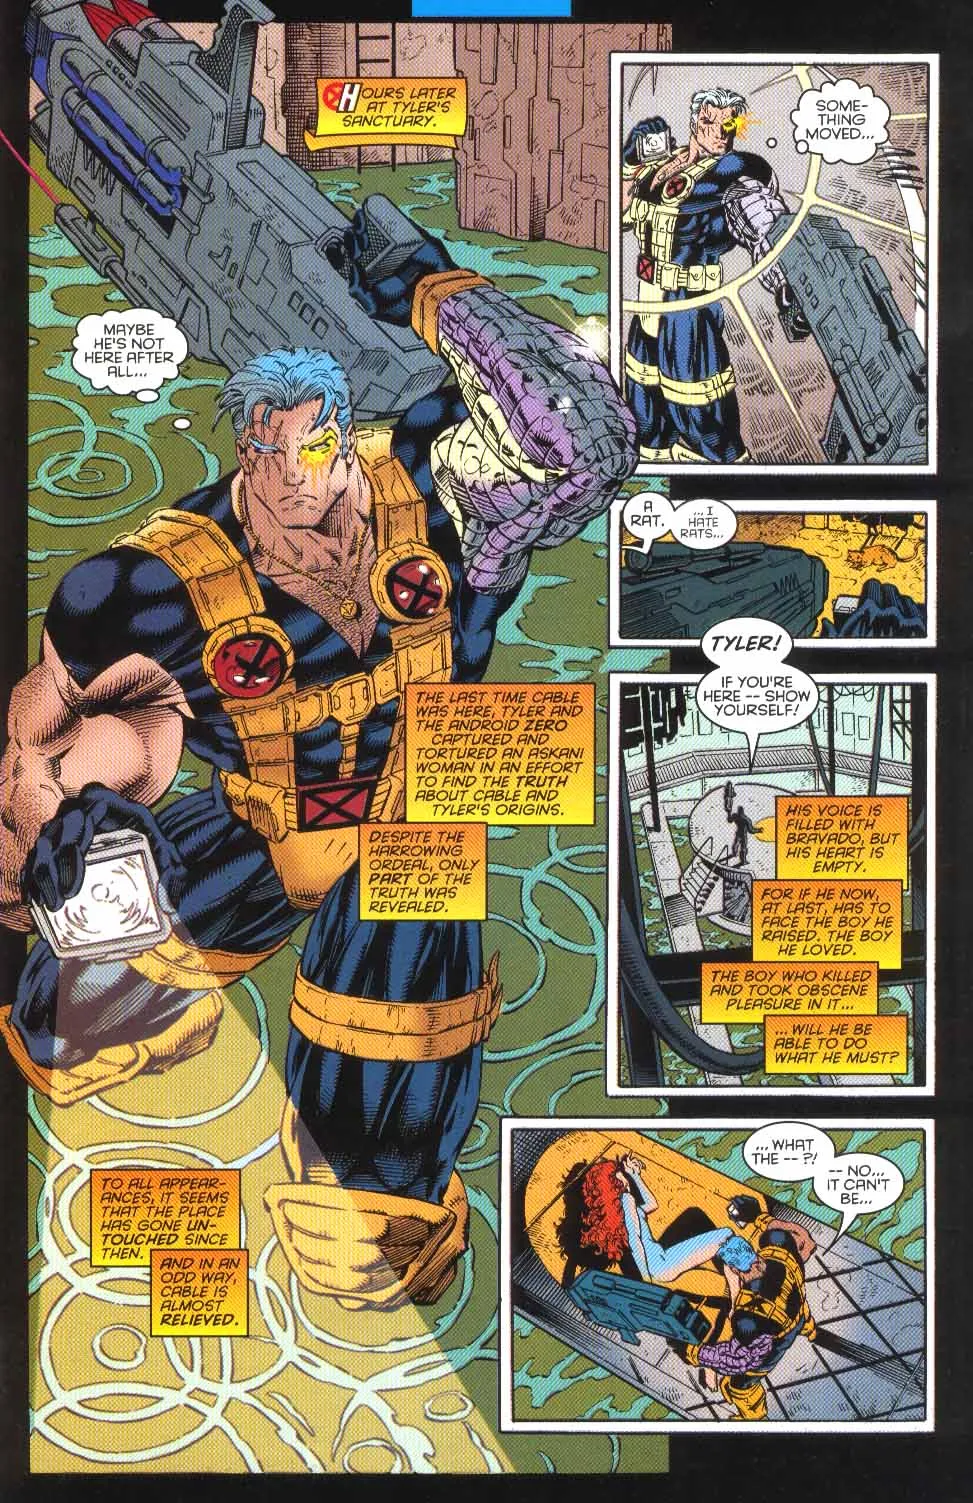 Cable sosteniendo una pistola en Marvel Comics.  Esta imagen es parte de un artículo sobre 7 momentos oscuros de la historia de Marvel que quedaron inmortalizados en los videojuegos.